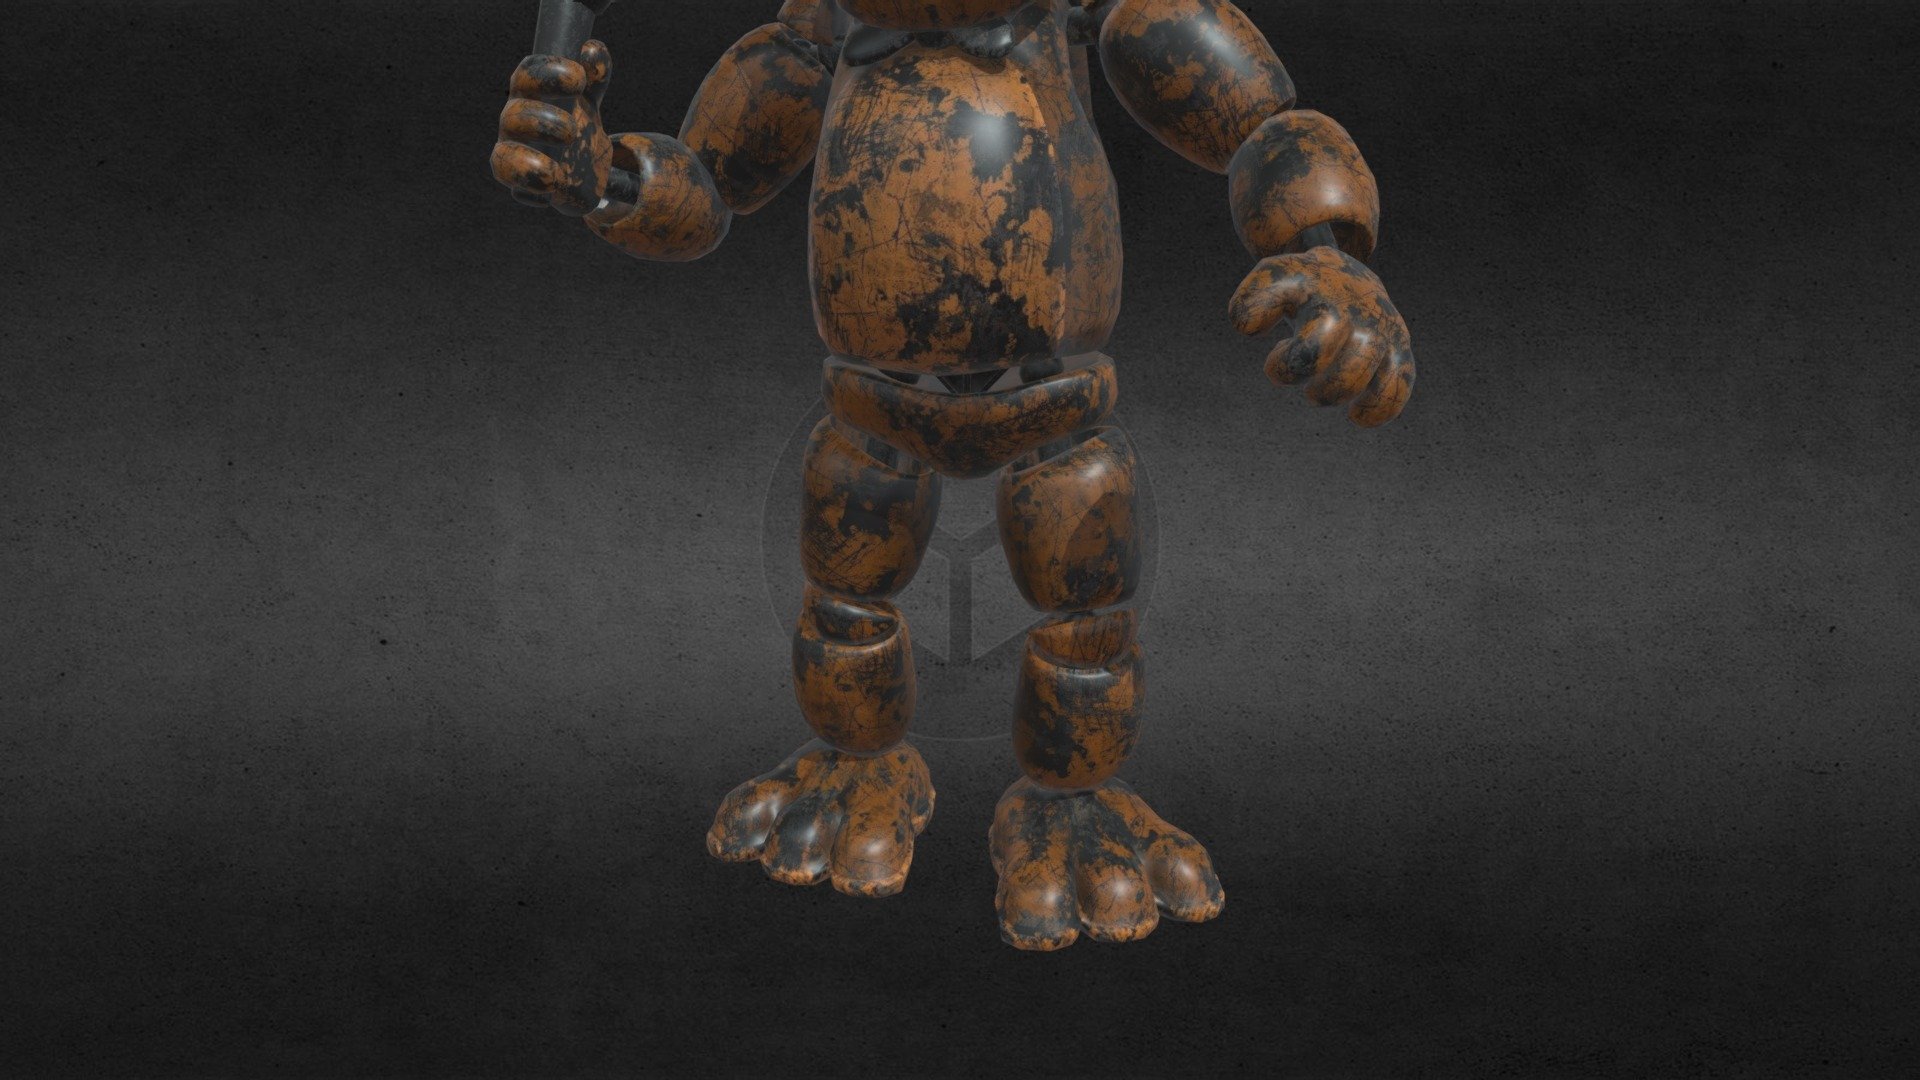 Freddy fazbear fnaf ar - Download Free 3D model by fap_nighits_frennis_fnia_fnaf (@fapnighitsatfrennis_fnia_fnaf) 3d model